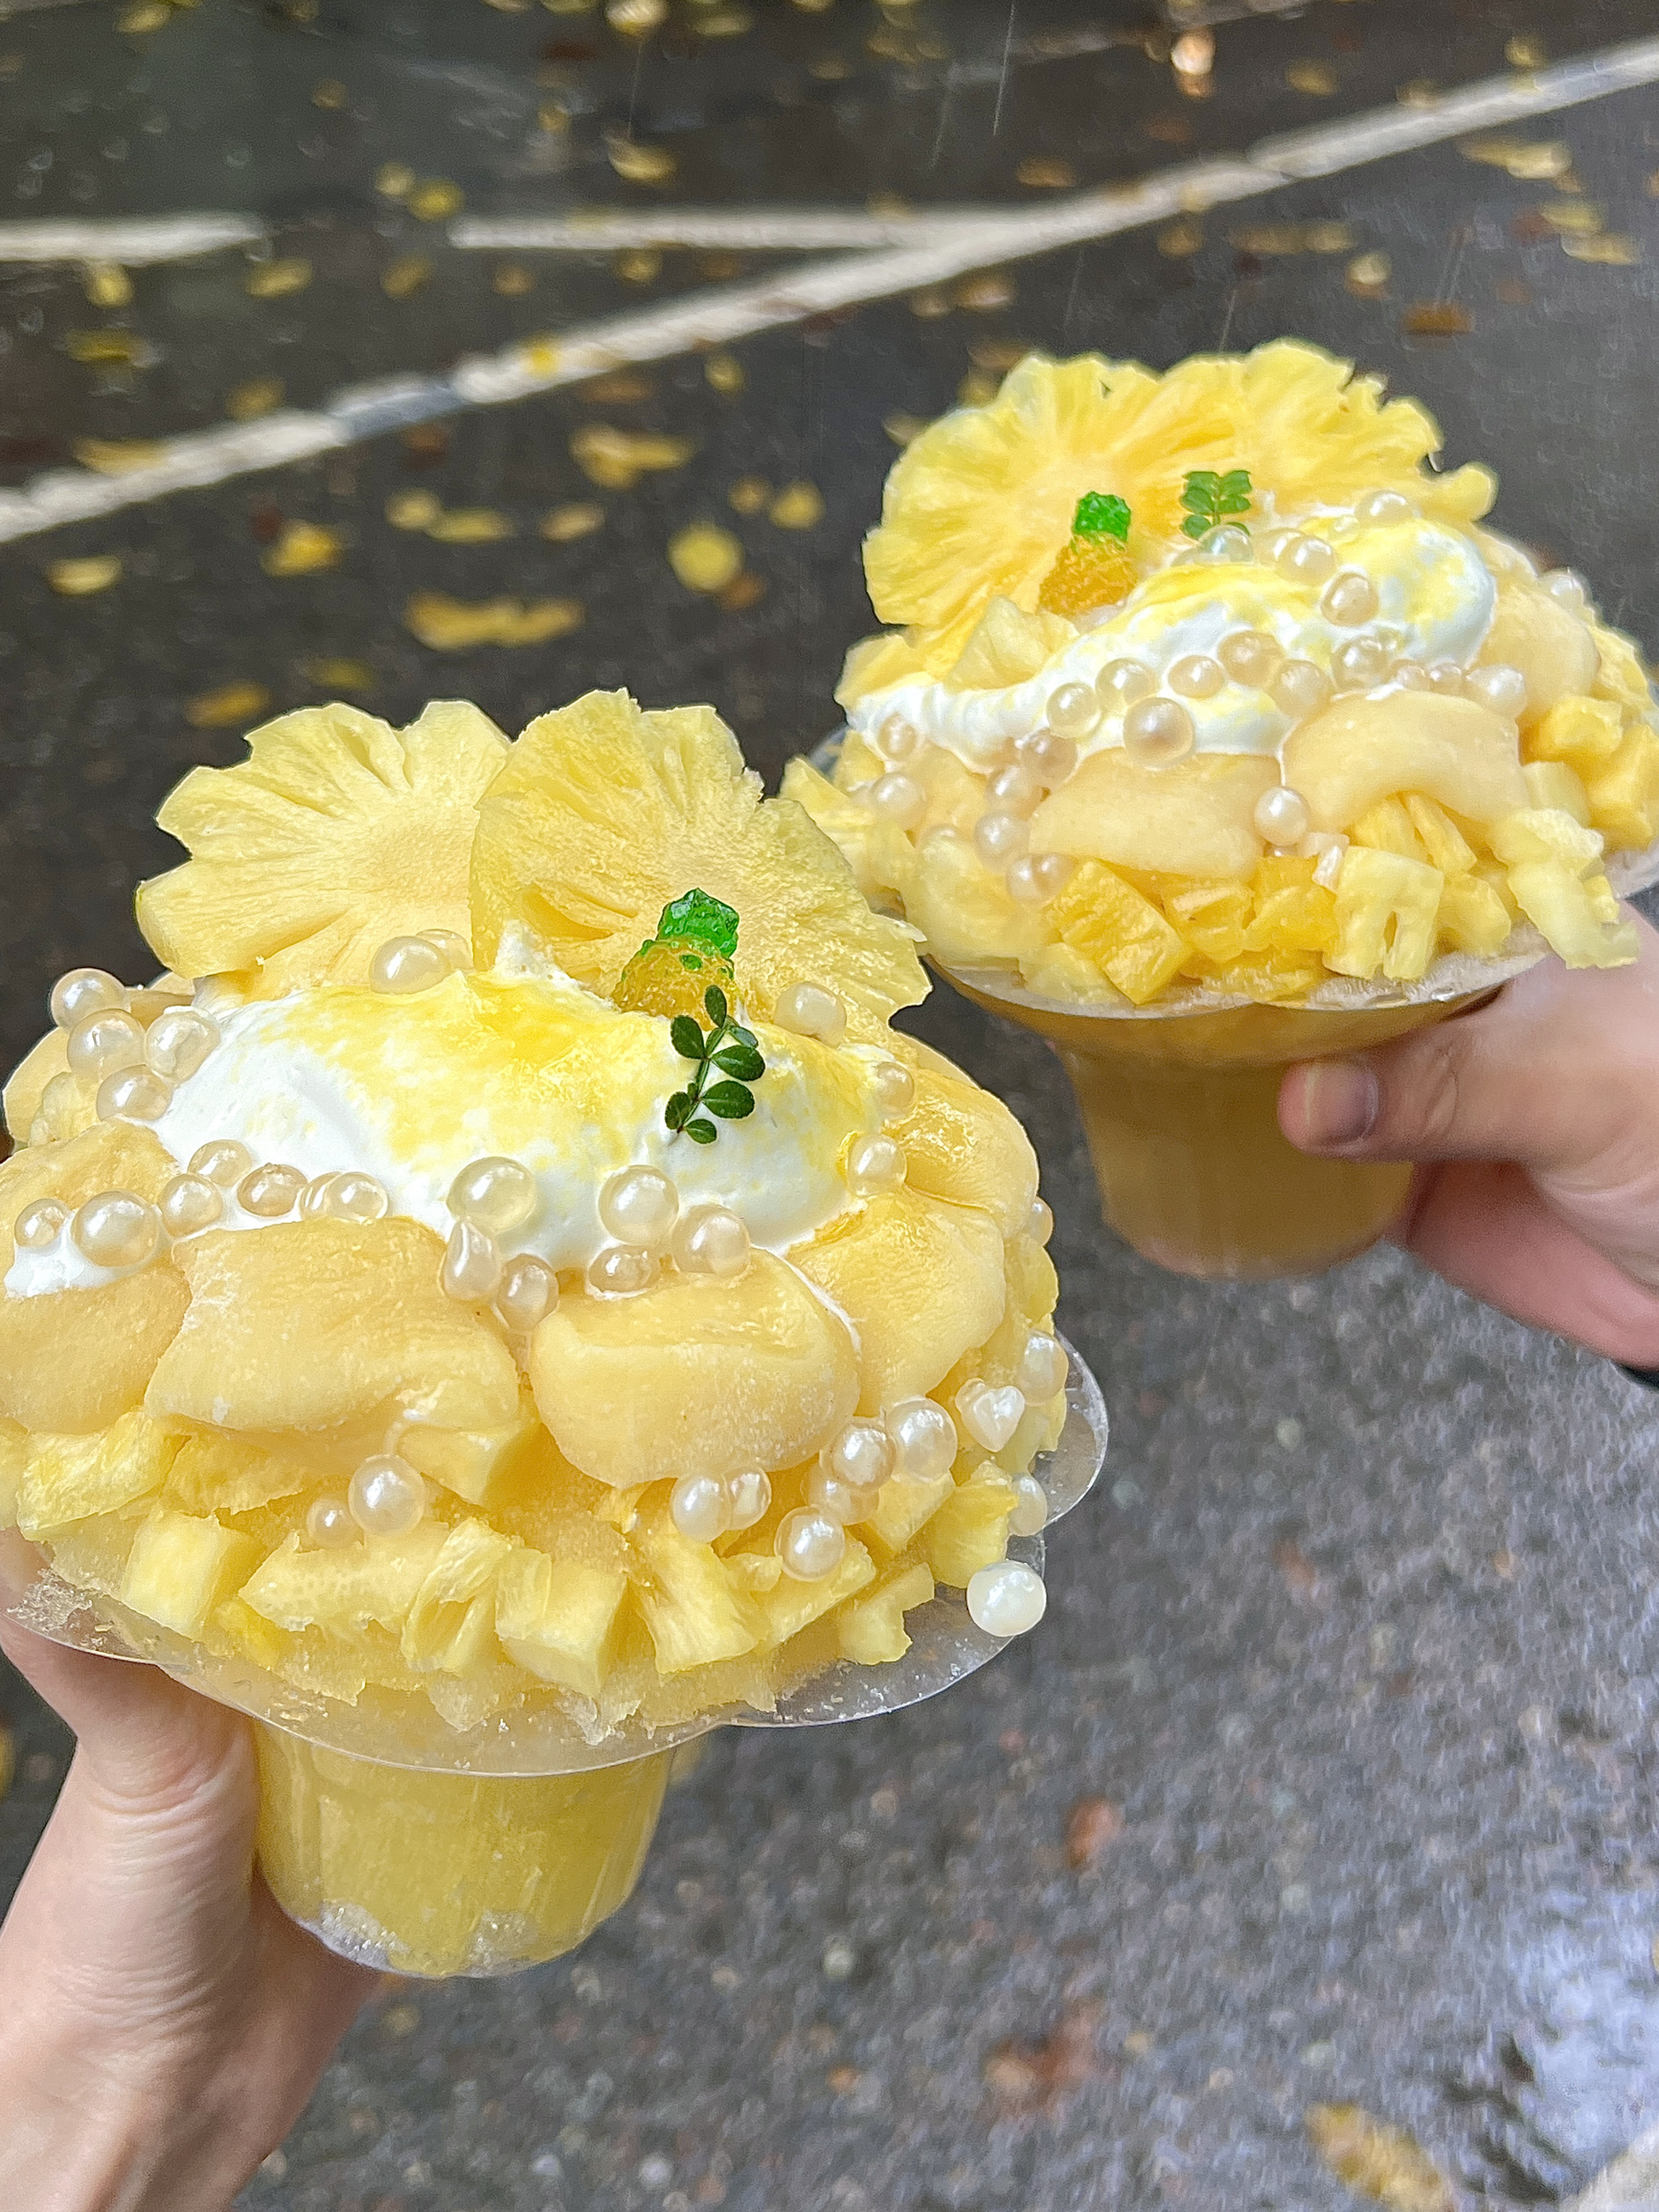 街头偶遇菠萝麻薯冰！冰冰凉凉好夏天！